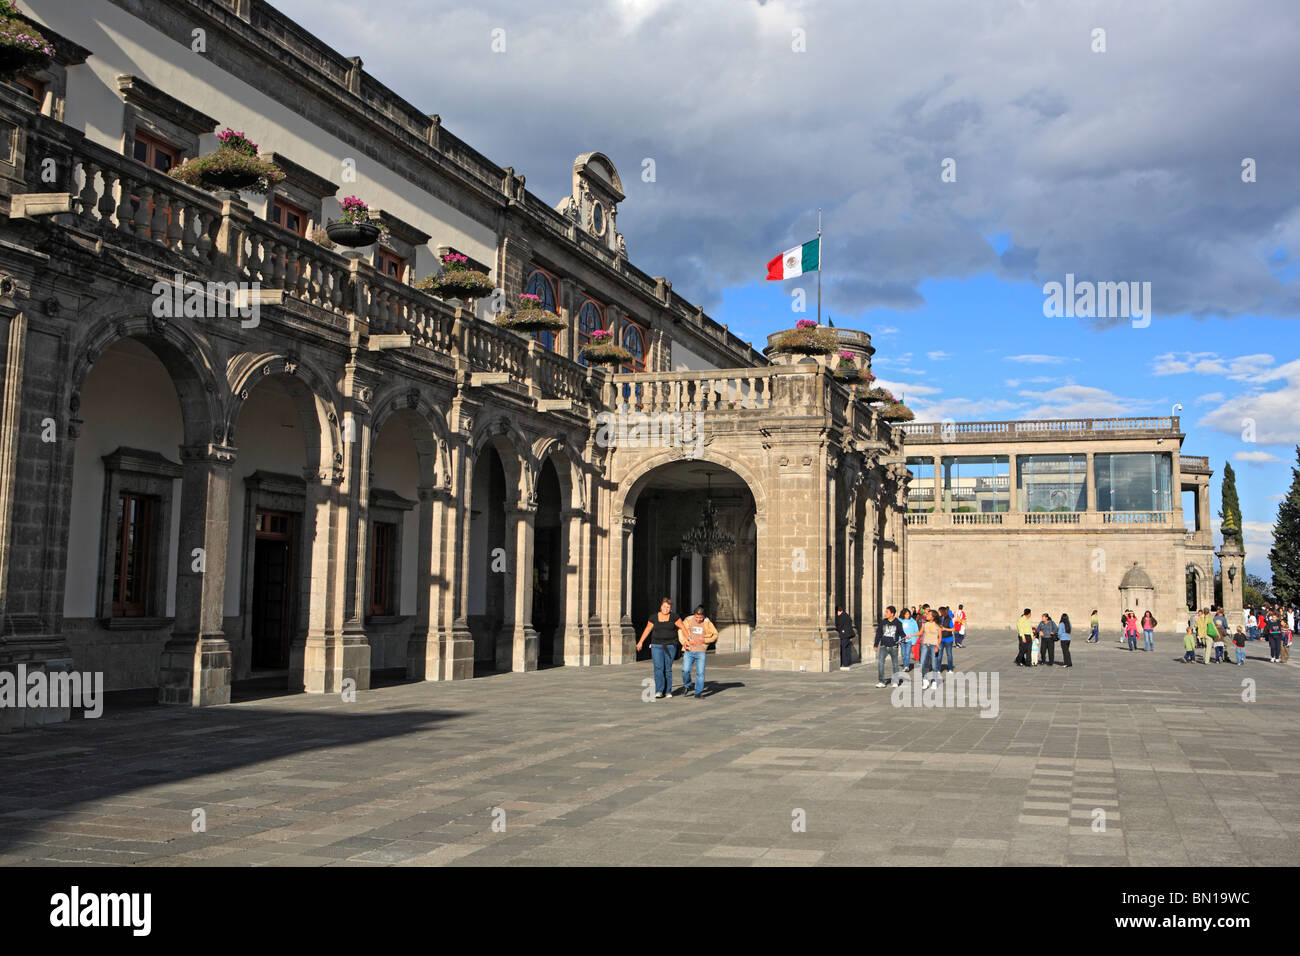 Chapultepec castle, Mexico City, Mexico Stock Photo